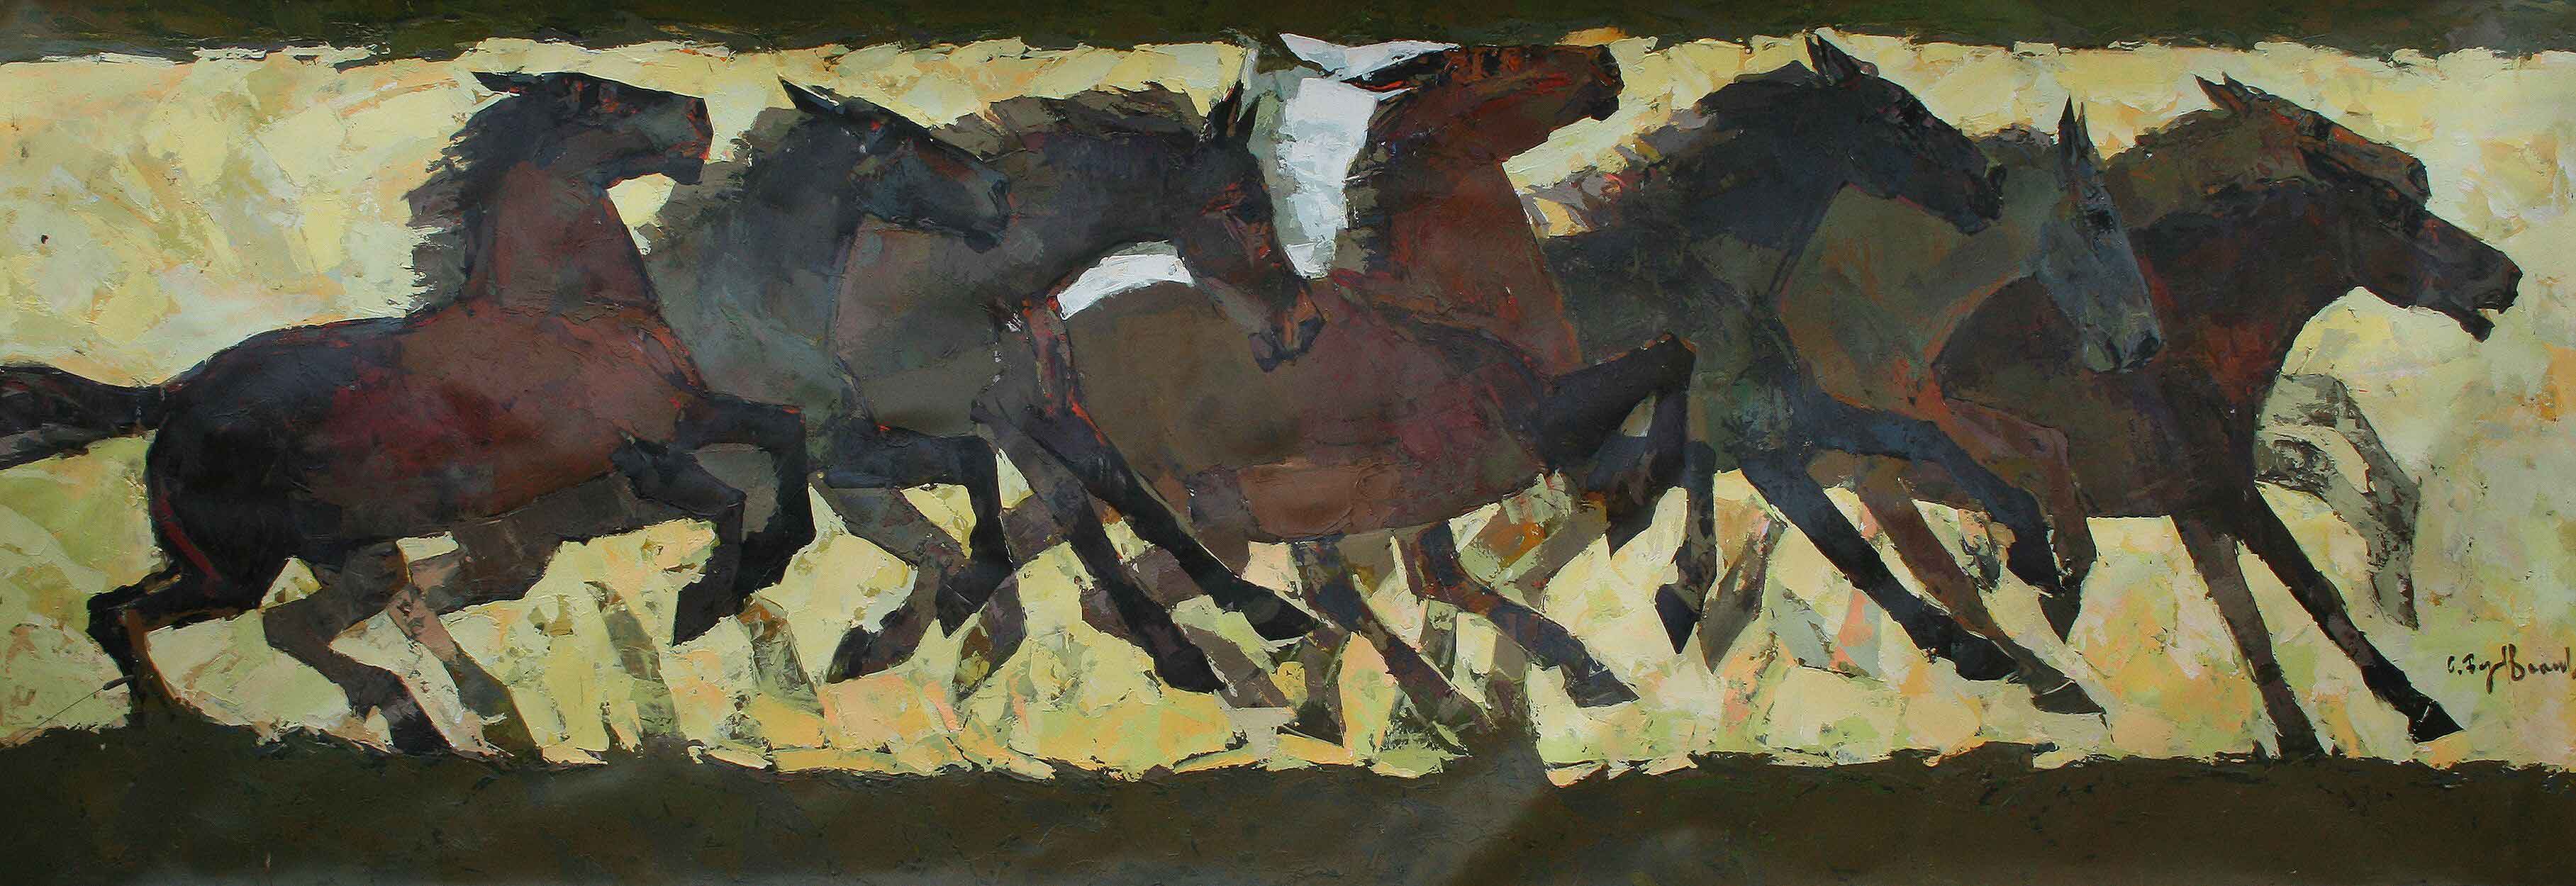 作品表现了马群中各种姿态的马